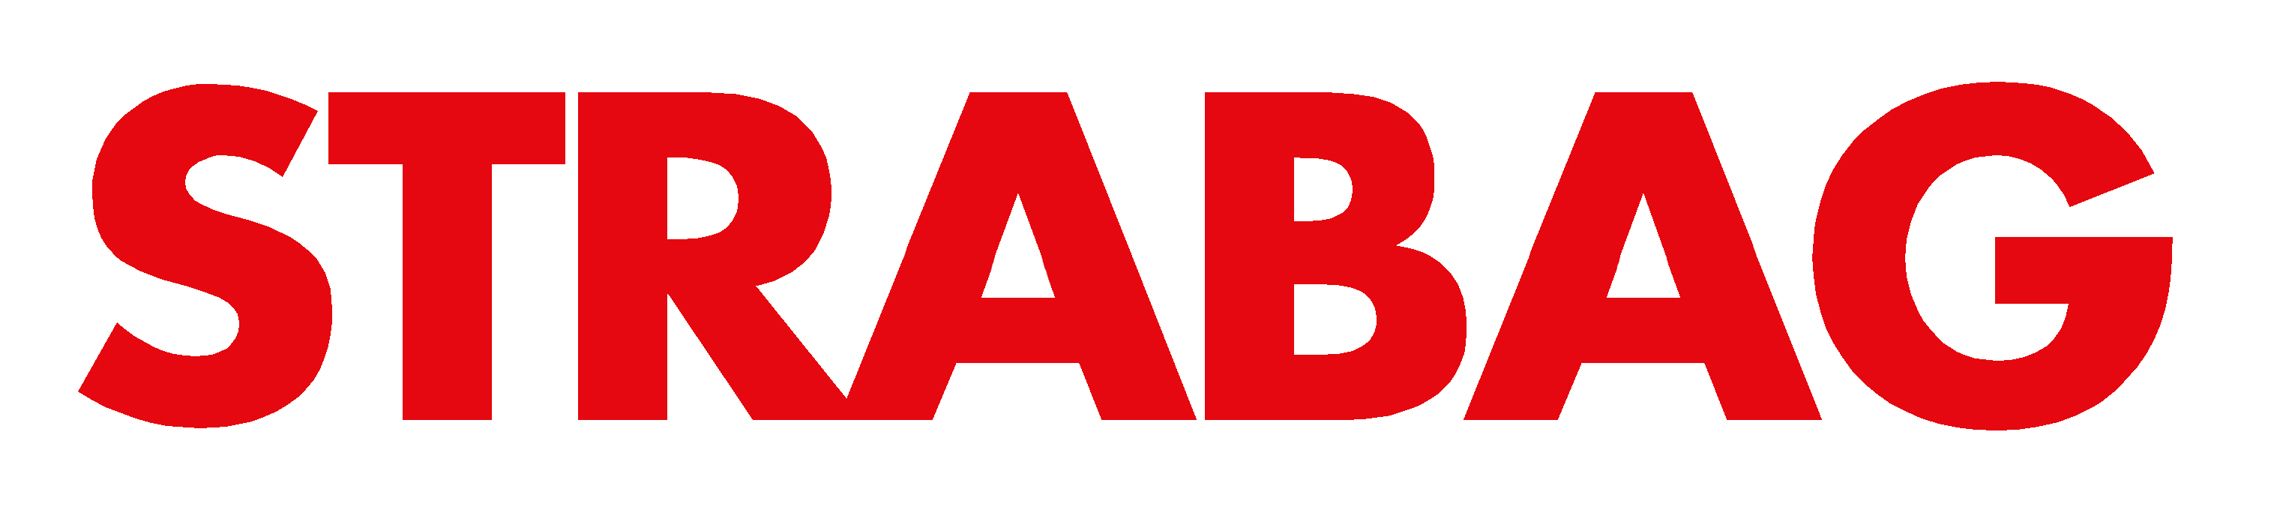 STRABAG AG   Logo